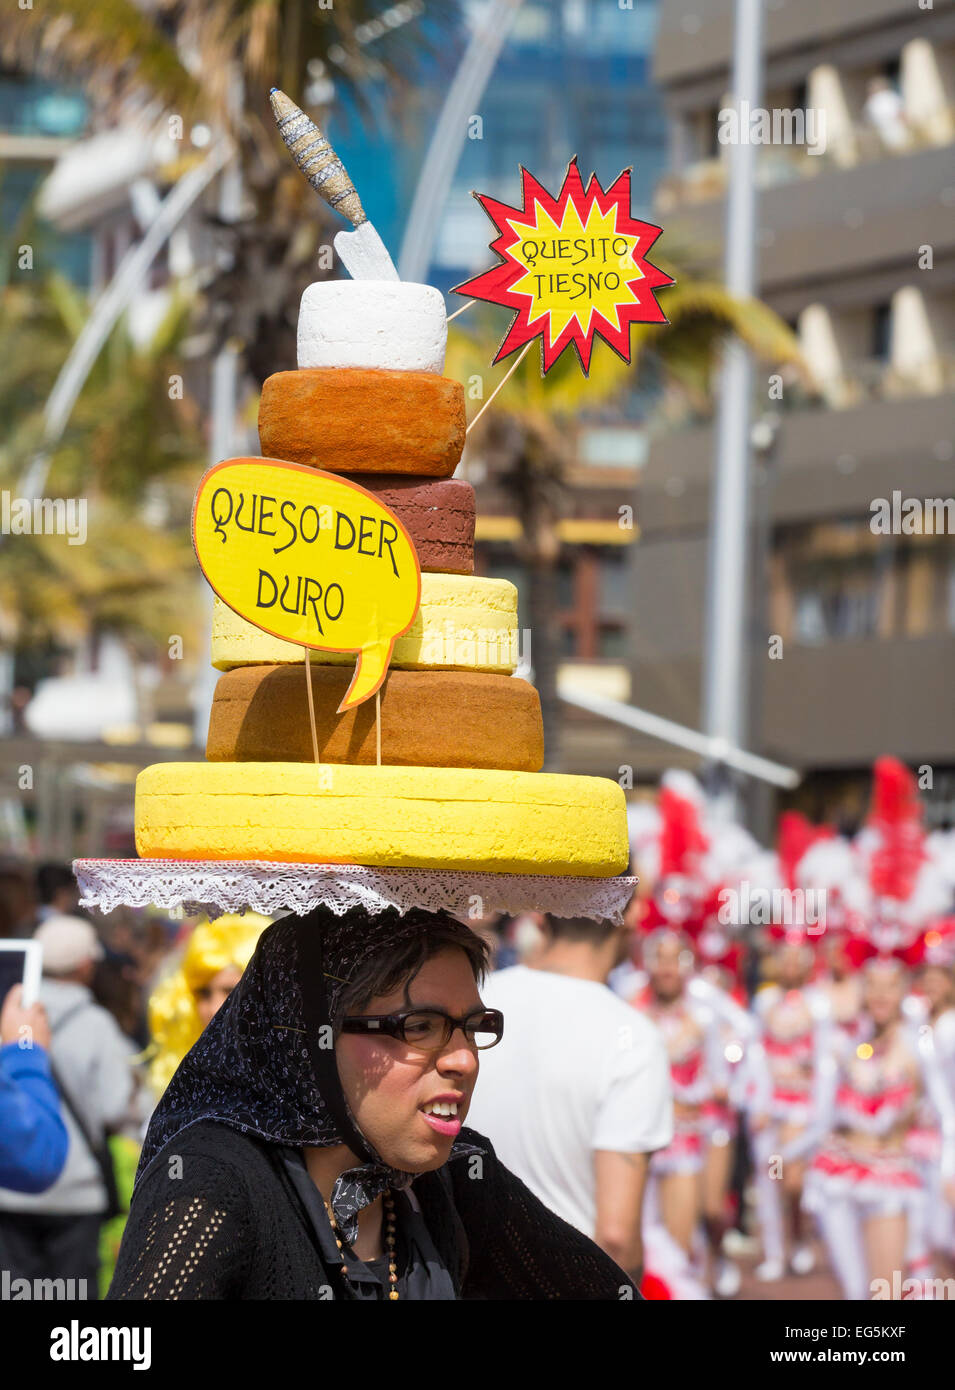 Las Palmas de Gran Canaria, Isole Canarie, Spagna. Il 17 gennaio, 2015, elaborare il formaggio (Queso) hat a Las Palmas carnevale a Gran Canaria come il mese lungo Carnevale entra nella sua terza settimana. Credito: ALANDAWSONPHOTOGRAPHY/Alamy Live News Foto Stock